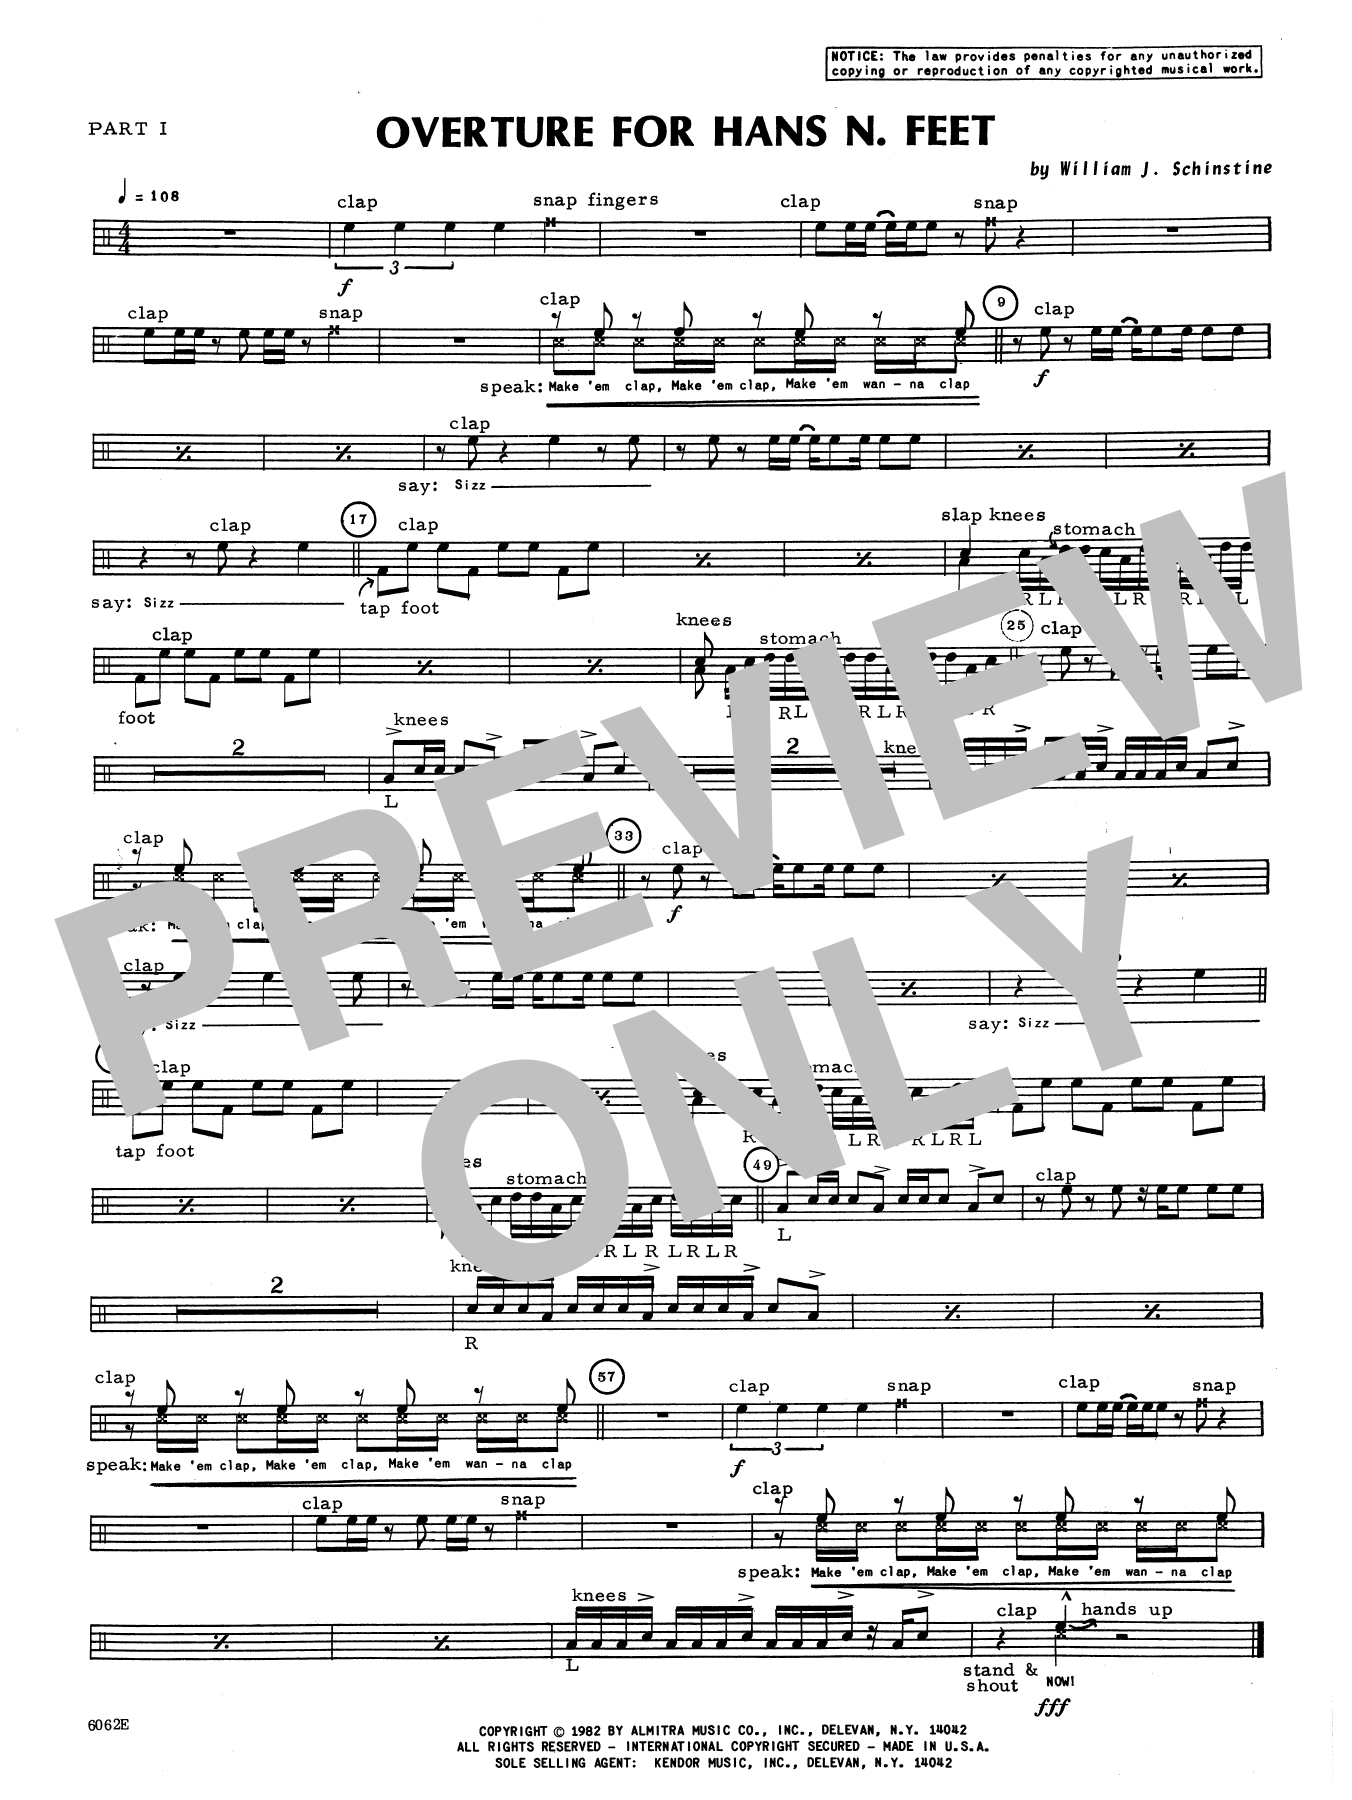 Download William Schinstine Overture For Hans N. Feet - Part 1 Sheet Music